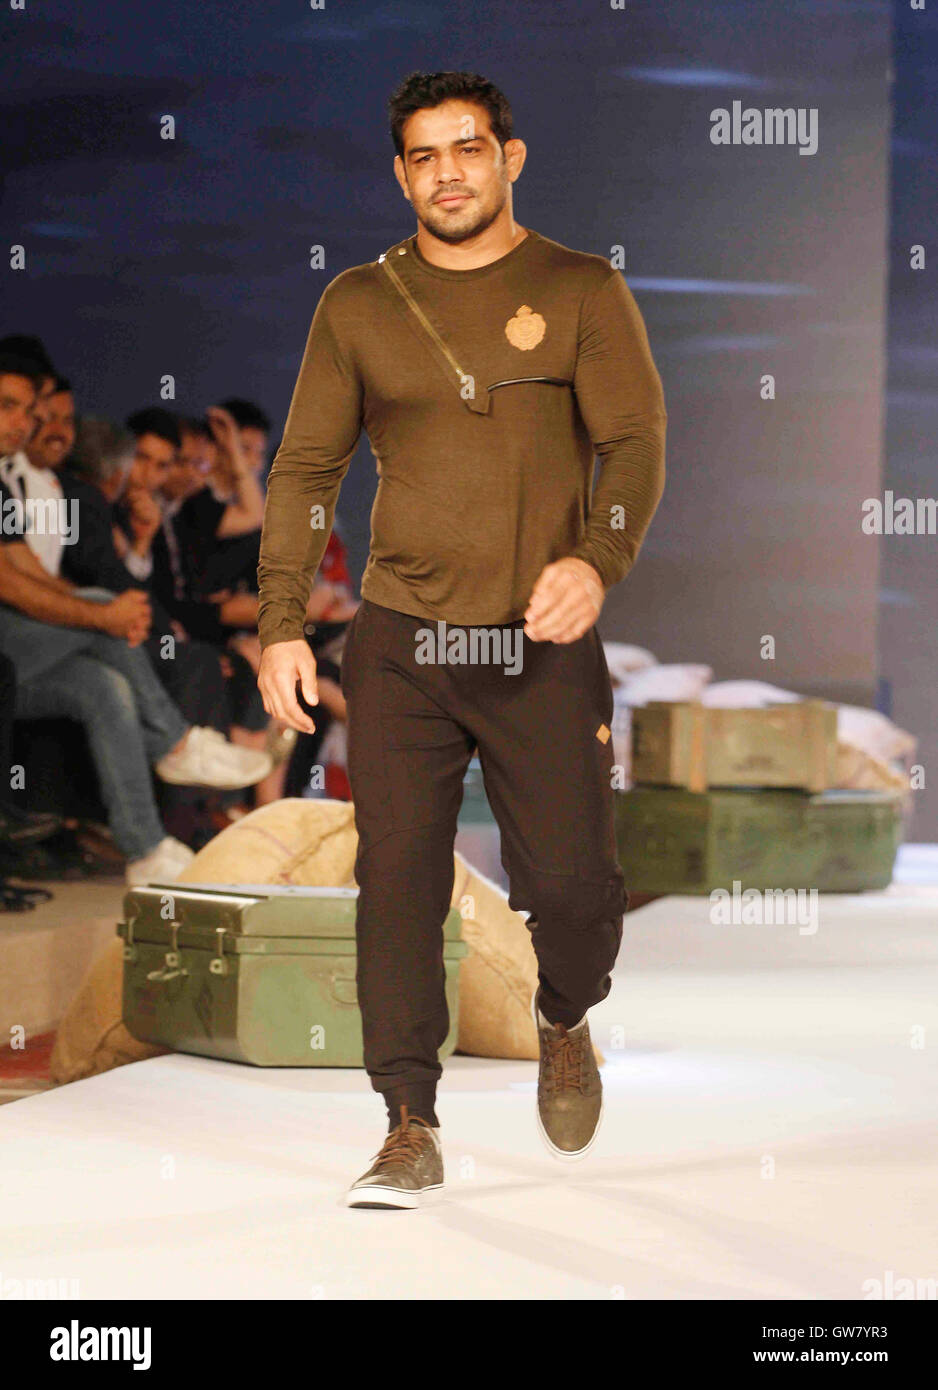 Il lottatore indiano Sushil Kumar passeggiate sulla rampa di lancio del marchio di abbigliamento YWC progettato Shantanu e Nikhil, Mumbai Foto Stock